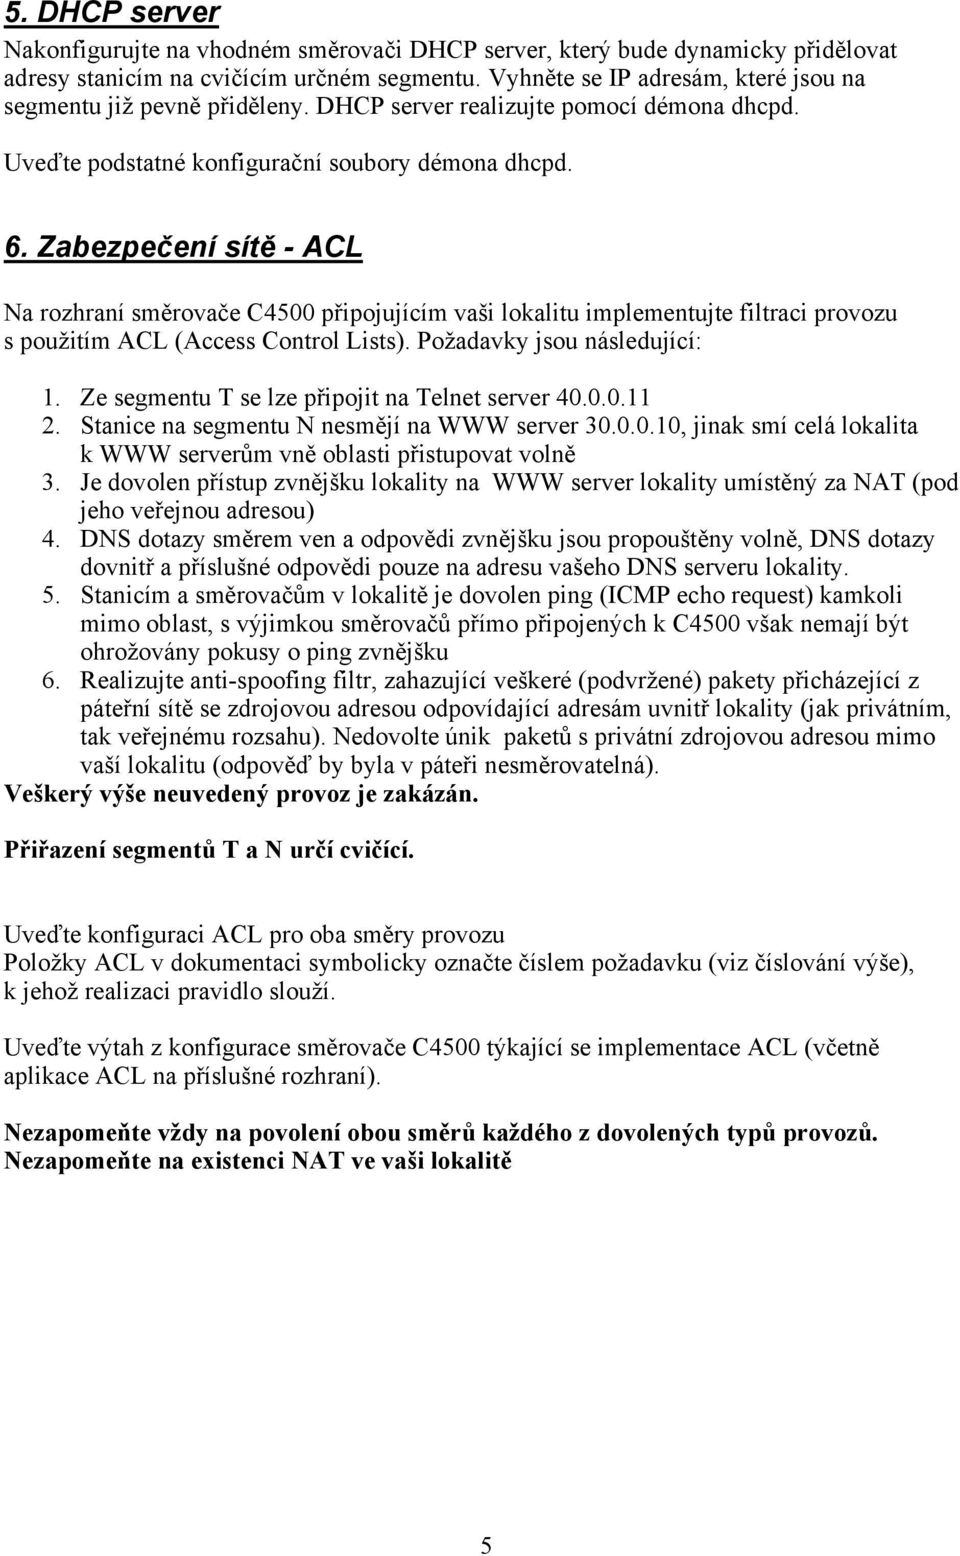 Zabezpečení sítě - ACL Na rozhraní směrovače C4500 připojujícím vaši lokalitu implementujte filtraci provozu s použitím ACL (Access Control Lists). Požadavky jsou následující: 1.